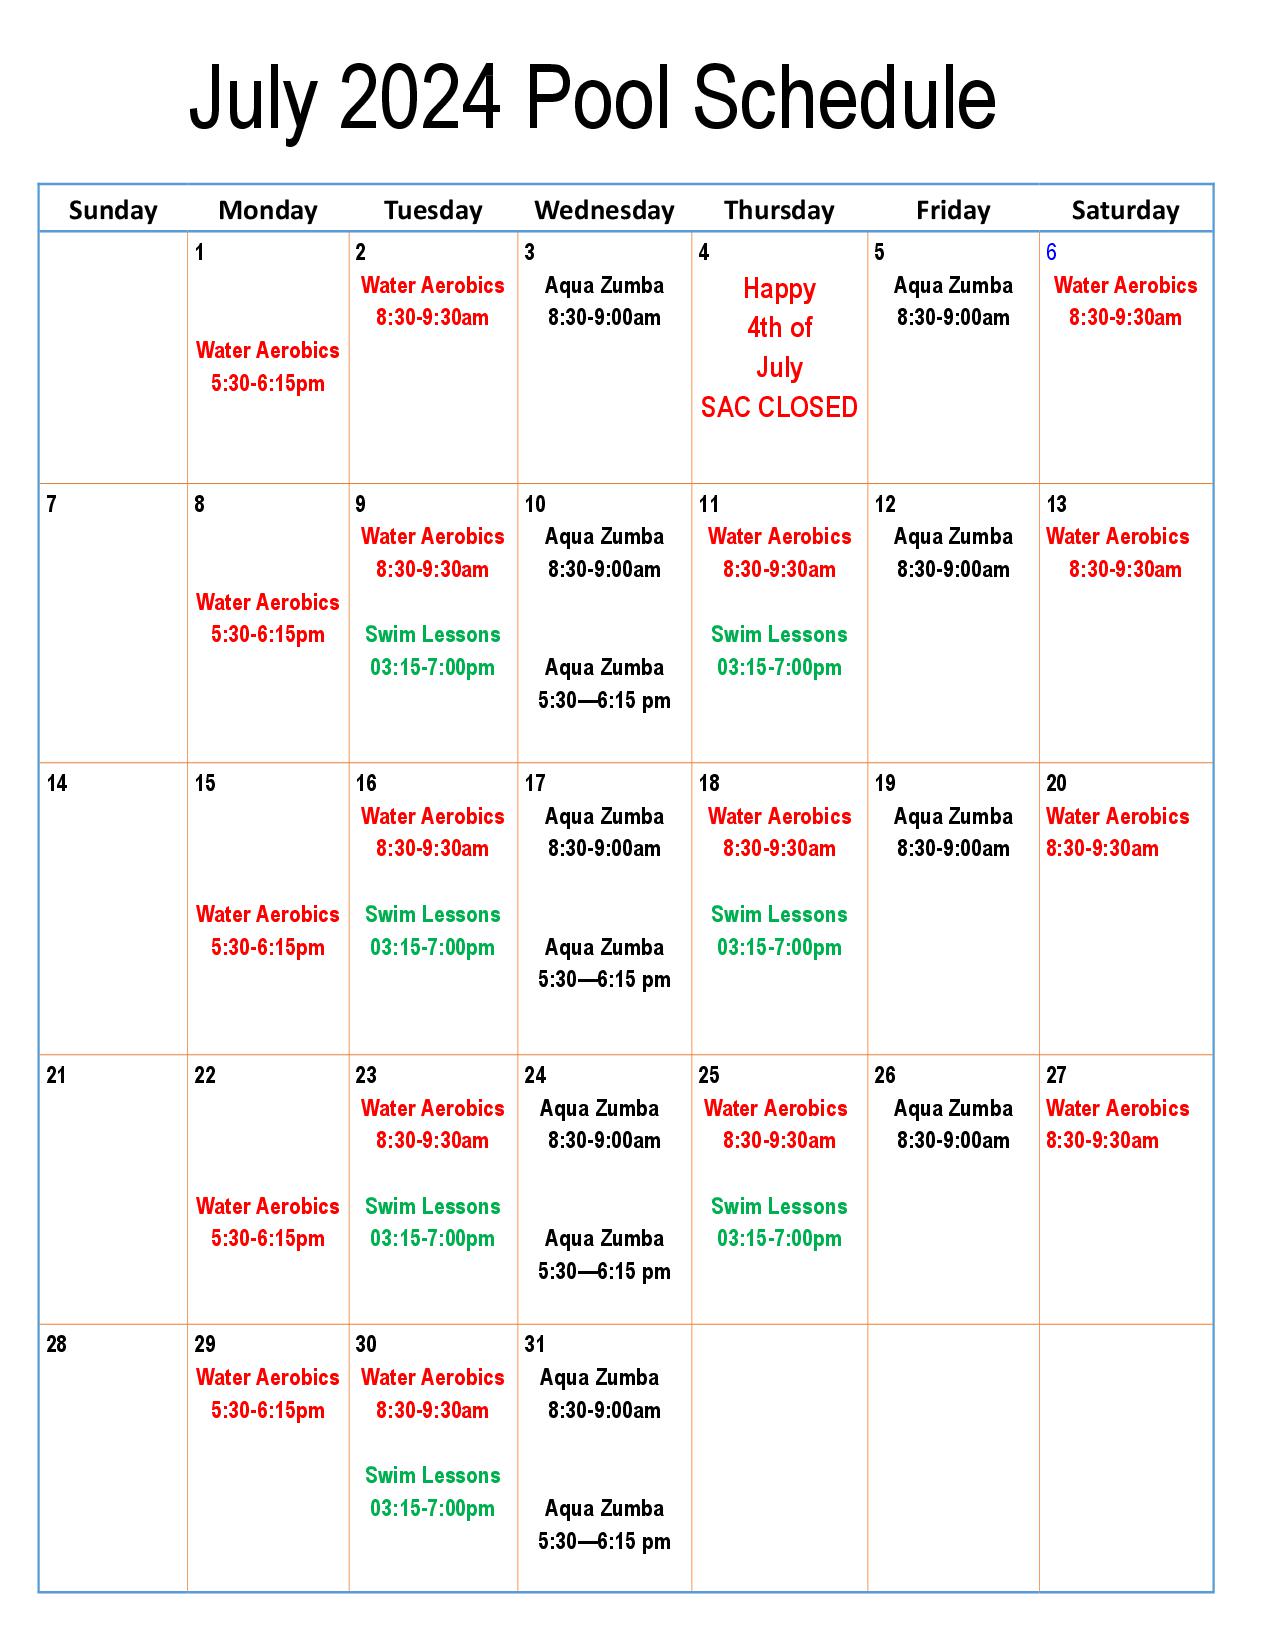 SAC Pool Schedule 